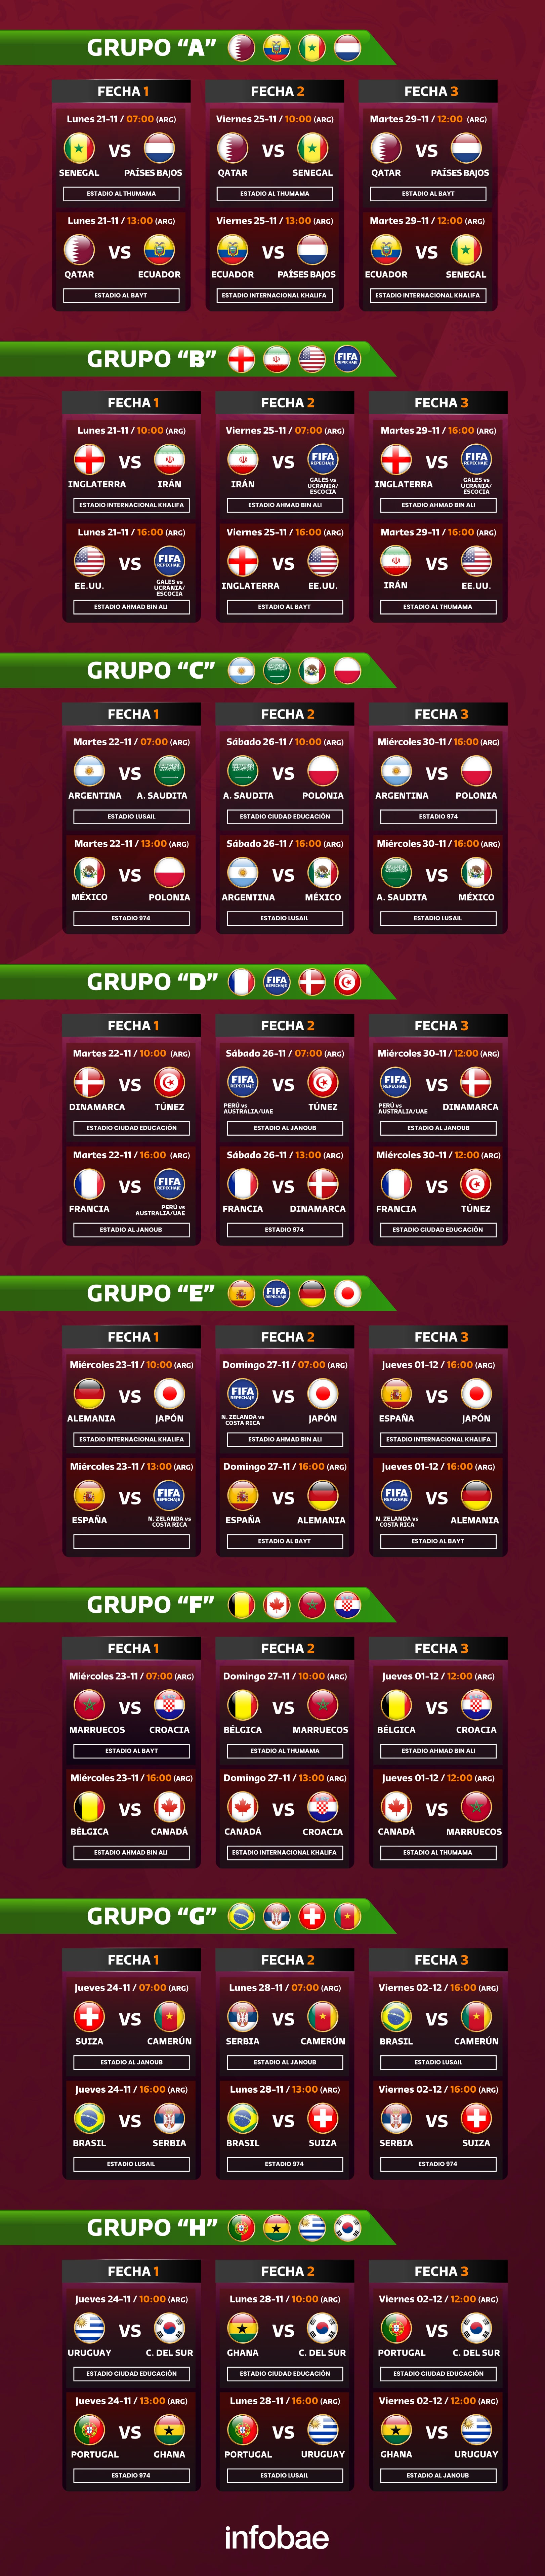 Grupo de URUGUAY en el Mundial Qatar 2022: partidos, fixture